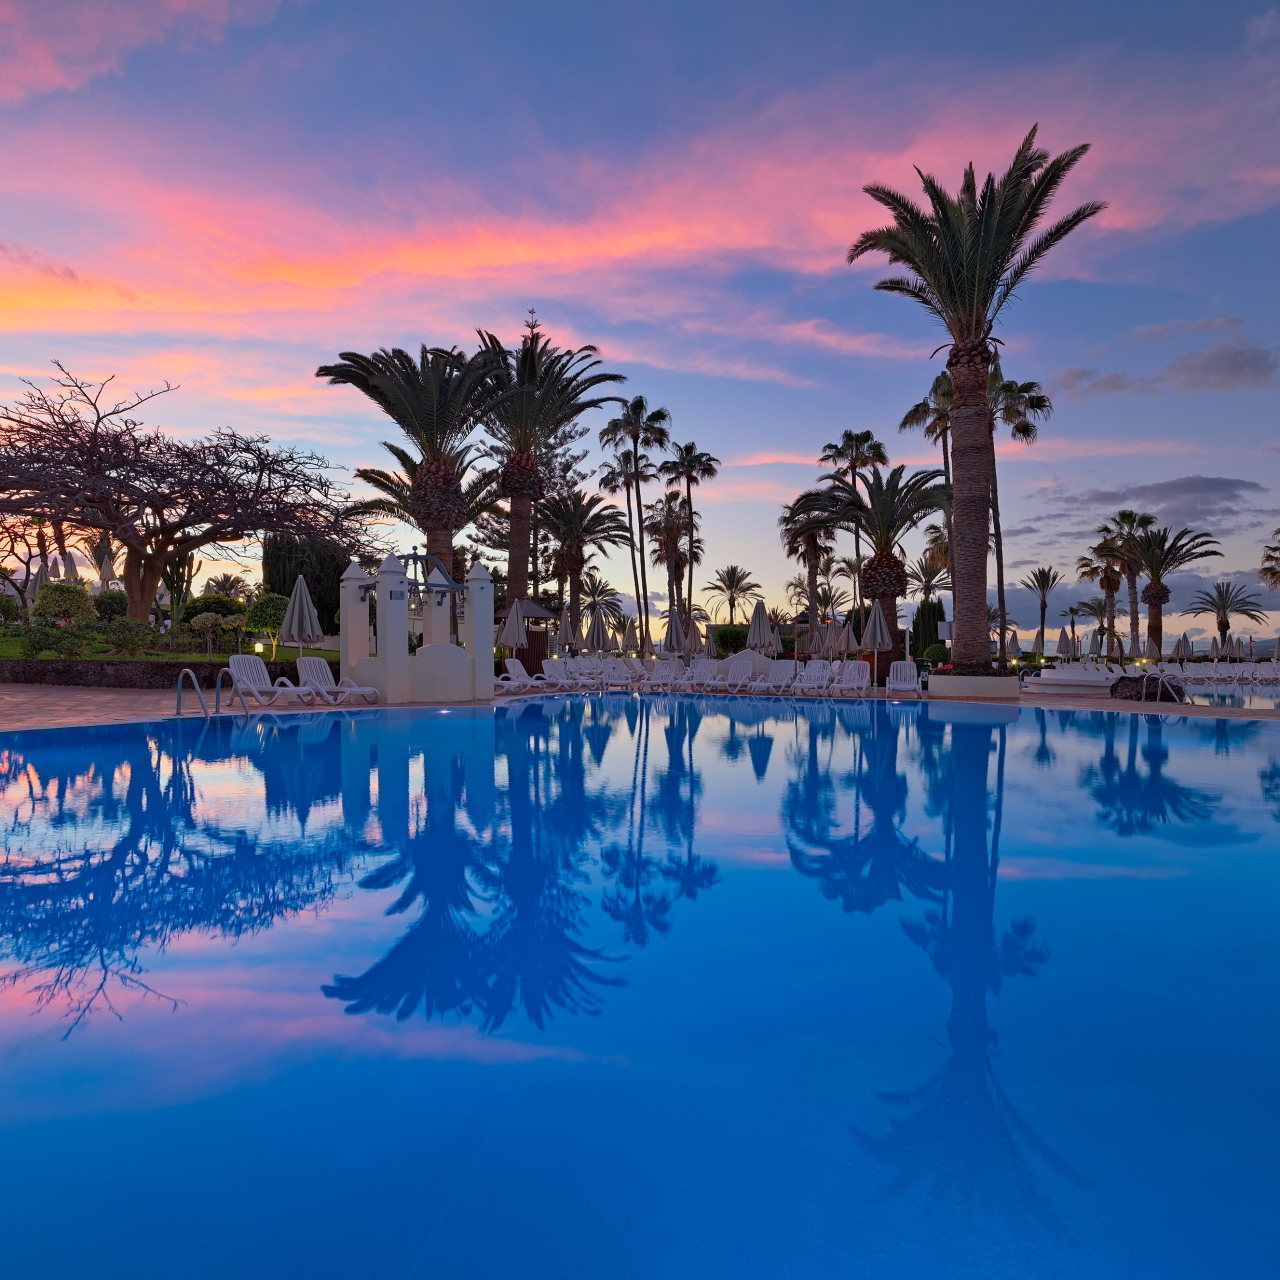 Hotel H10 Las Palmeras en Tenerife en HRS con servicios gratuitos